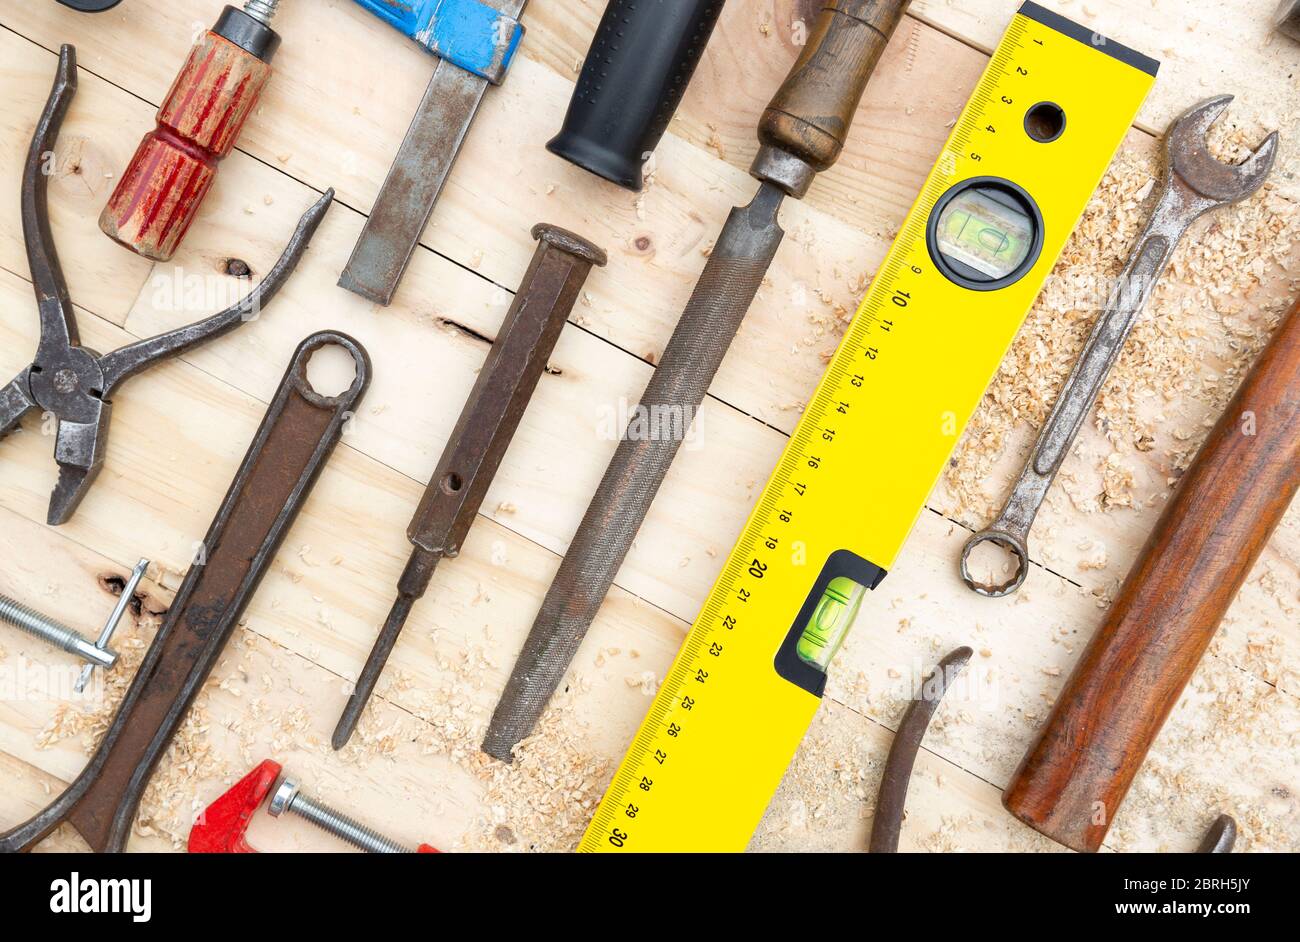 Detalle de un conjunto de herramientas de carpintería colocadas sobre un tablón de madera de pino natural. Concepto de trabajo y bricolaje. Foto de stock